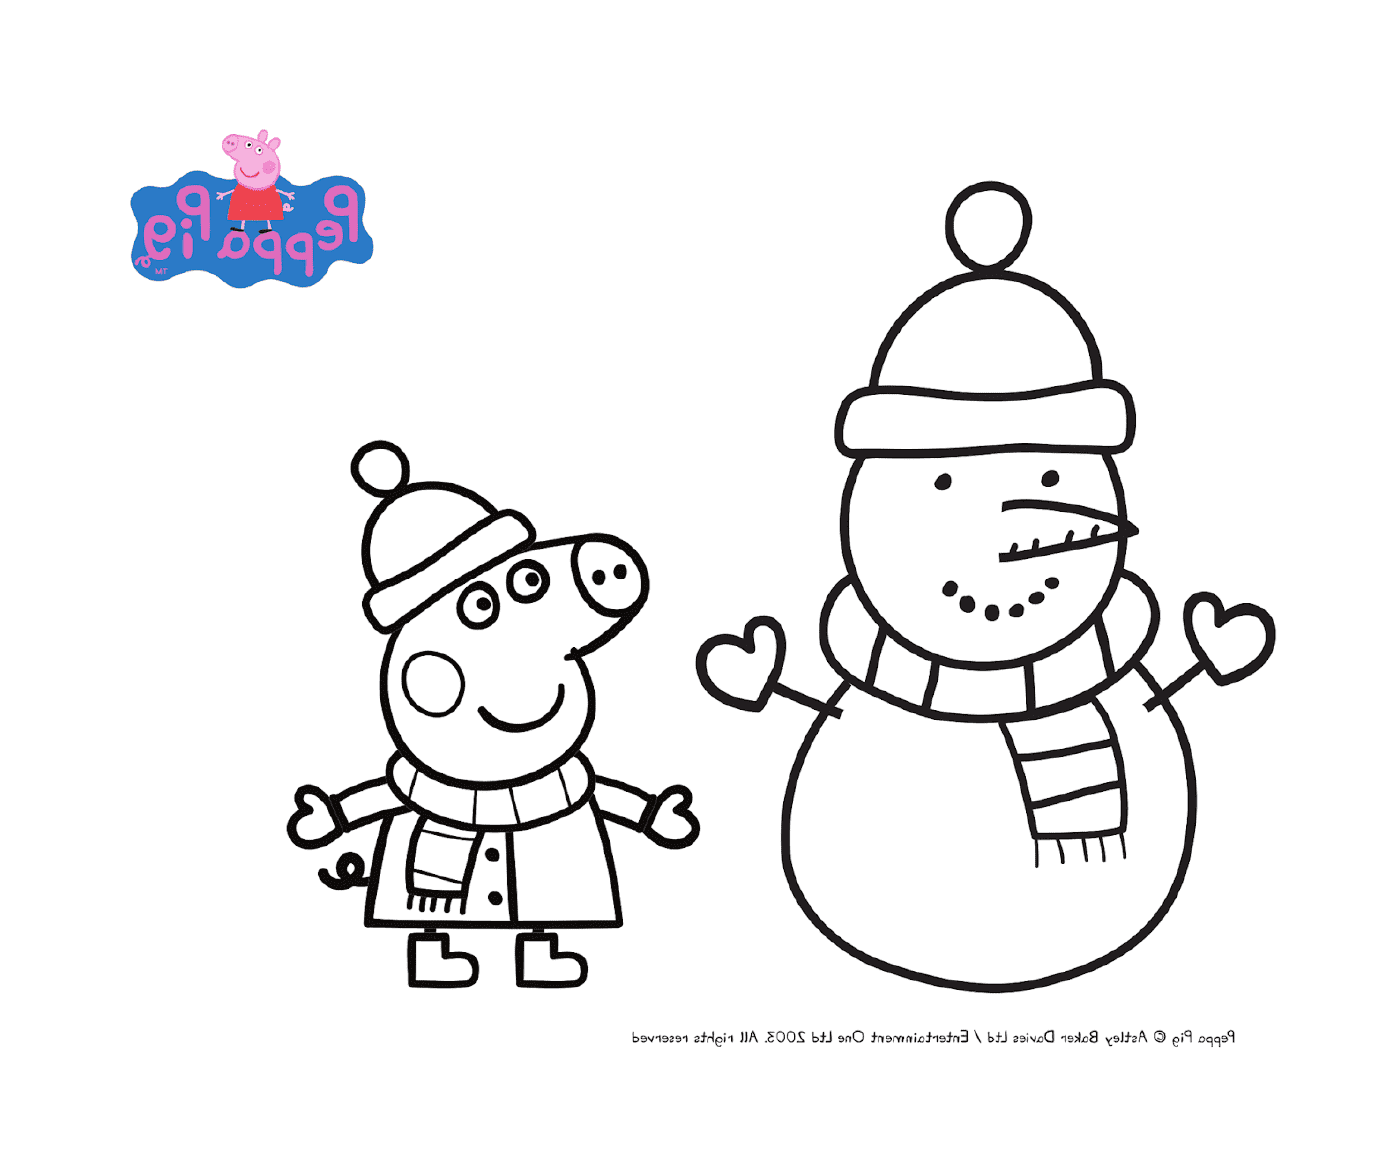  Peppa Pig en traje de invierno para Navidad 